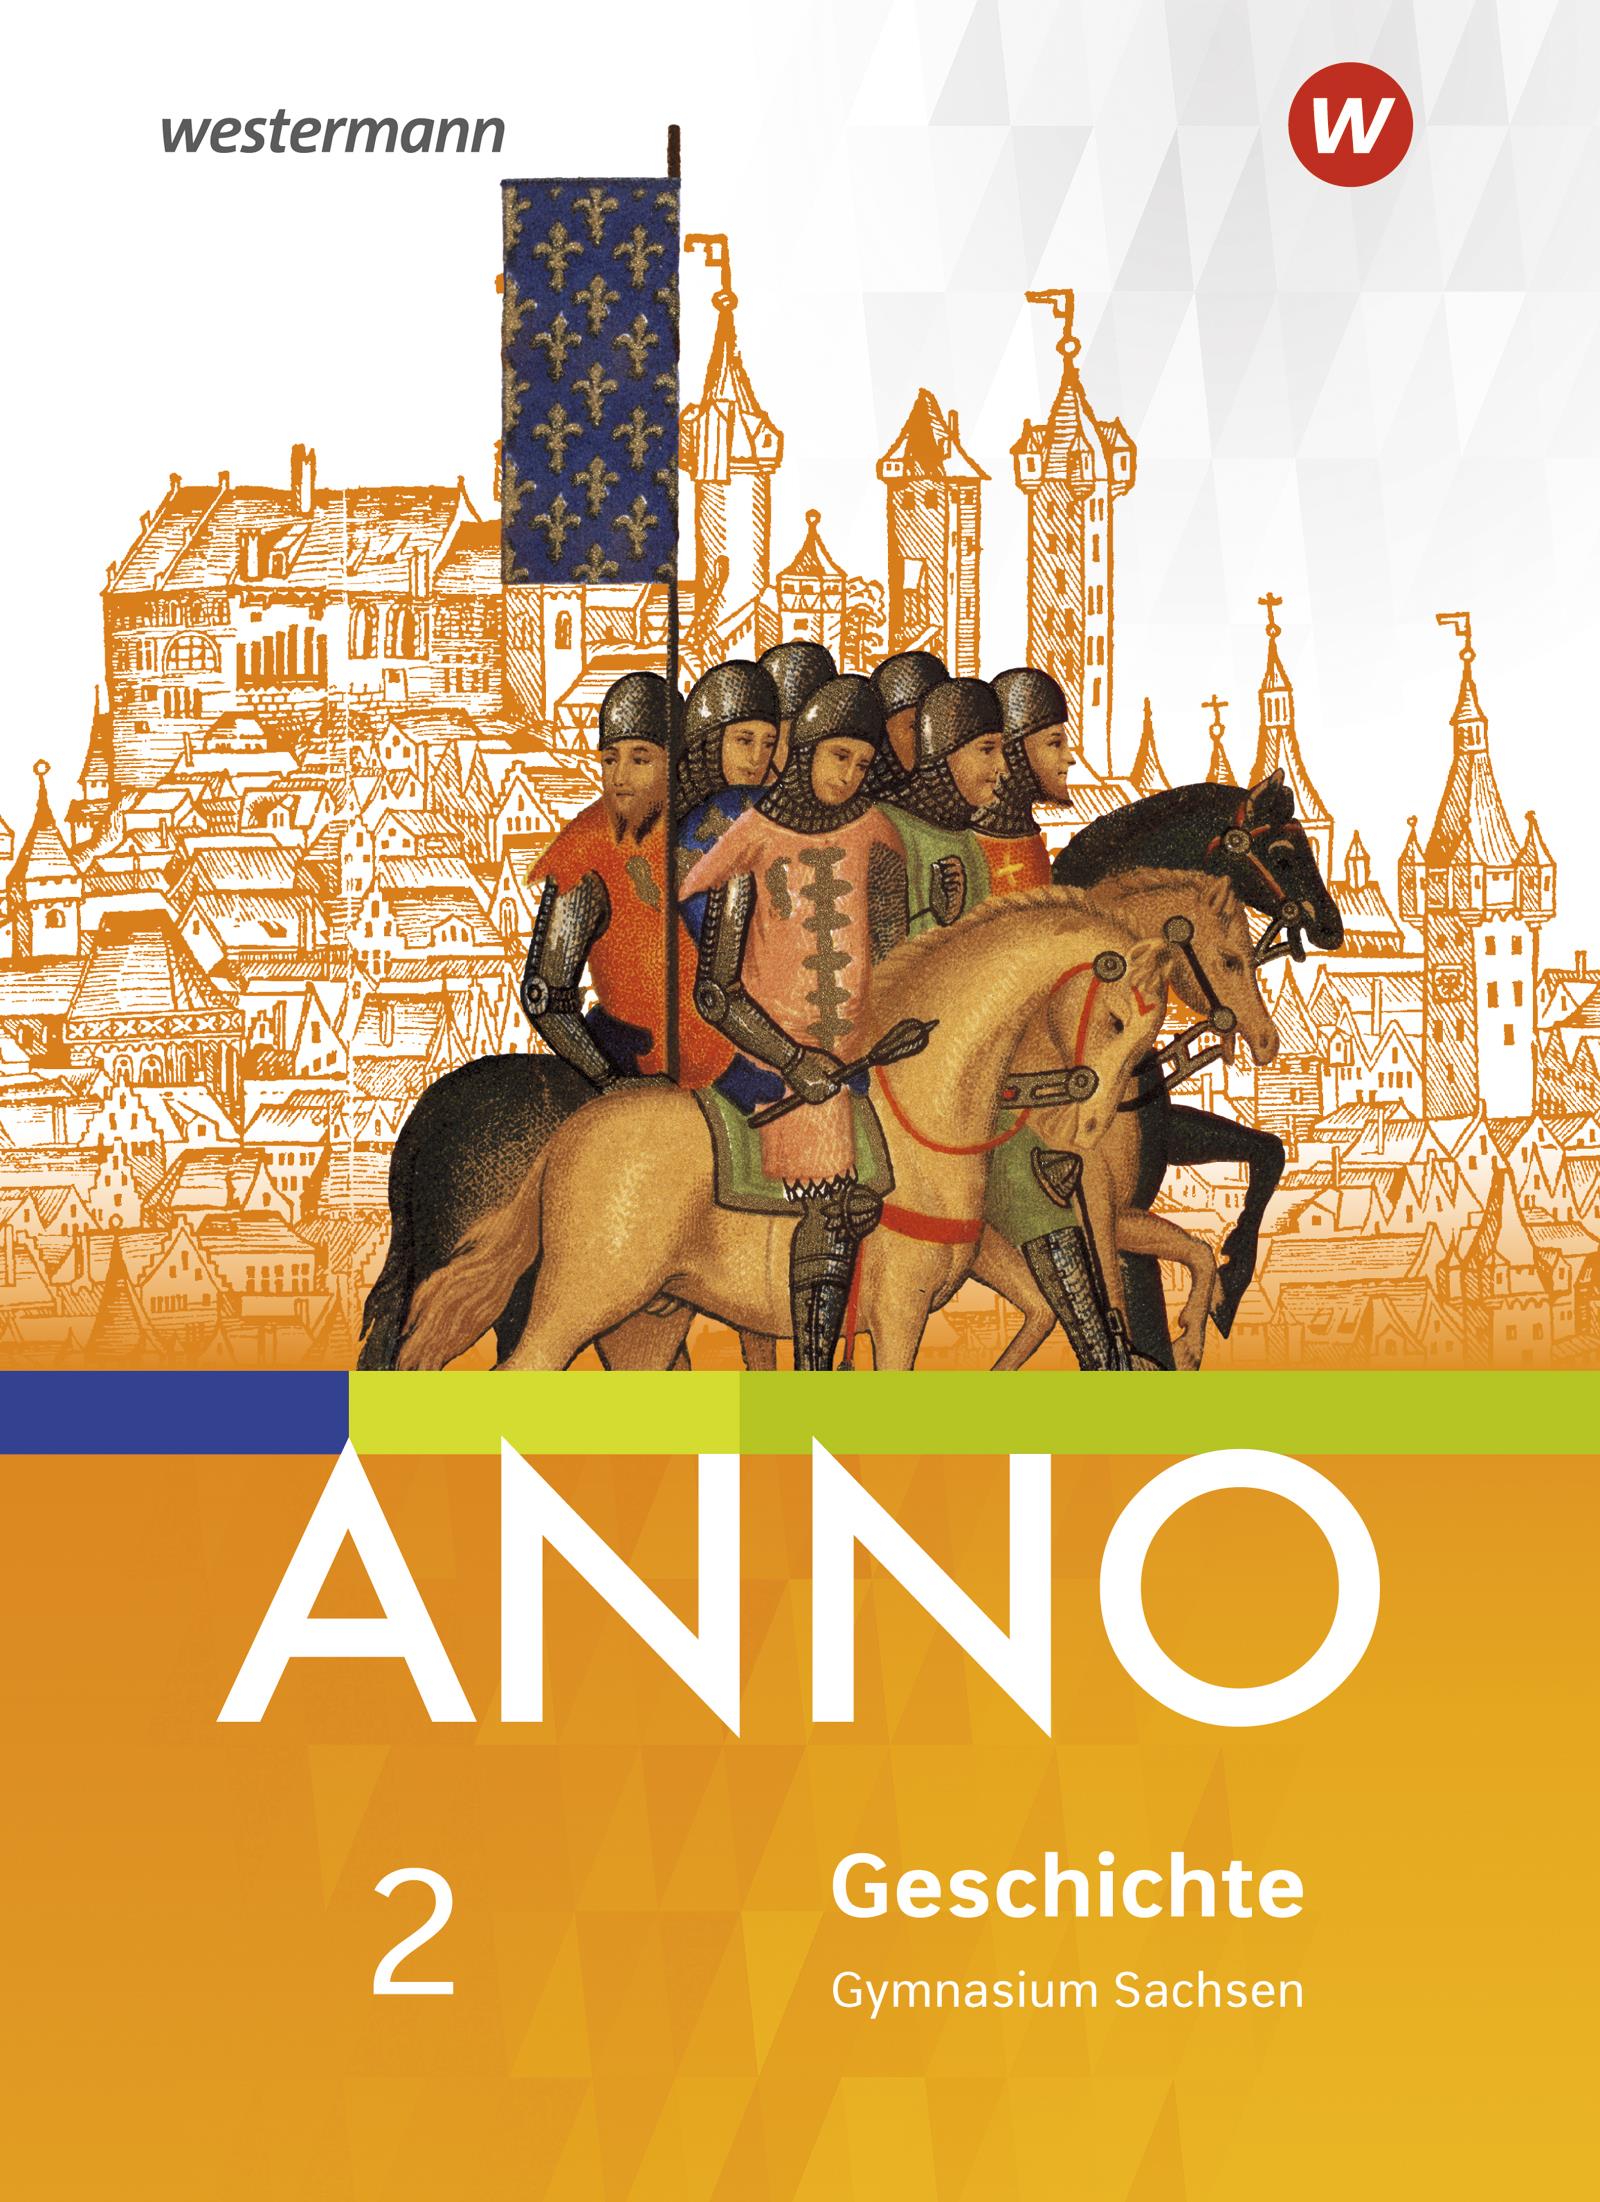 ANNO Geschichte 2 - Ausgabe 2019 für Gymnasien in Sachsen Schülerband 1